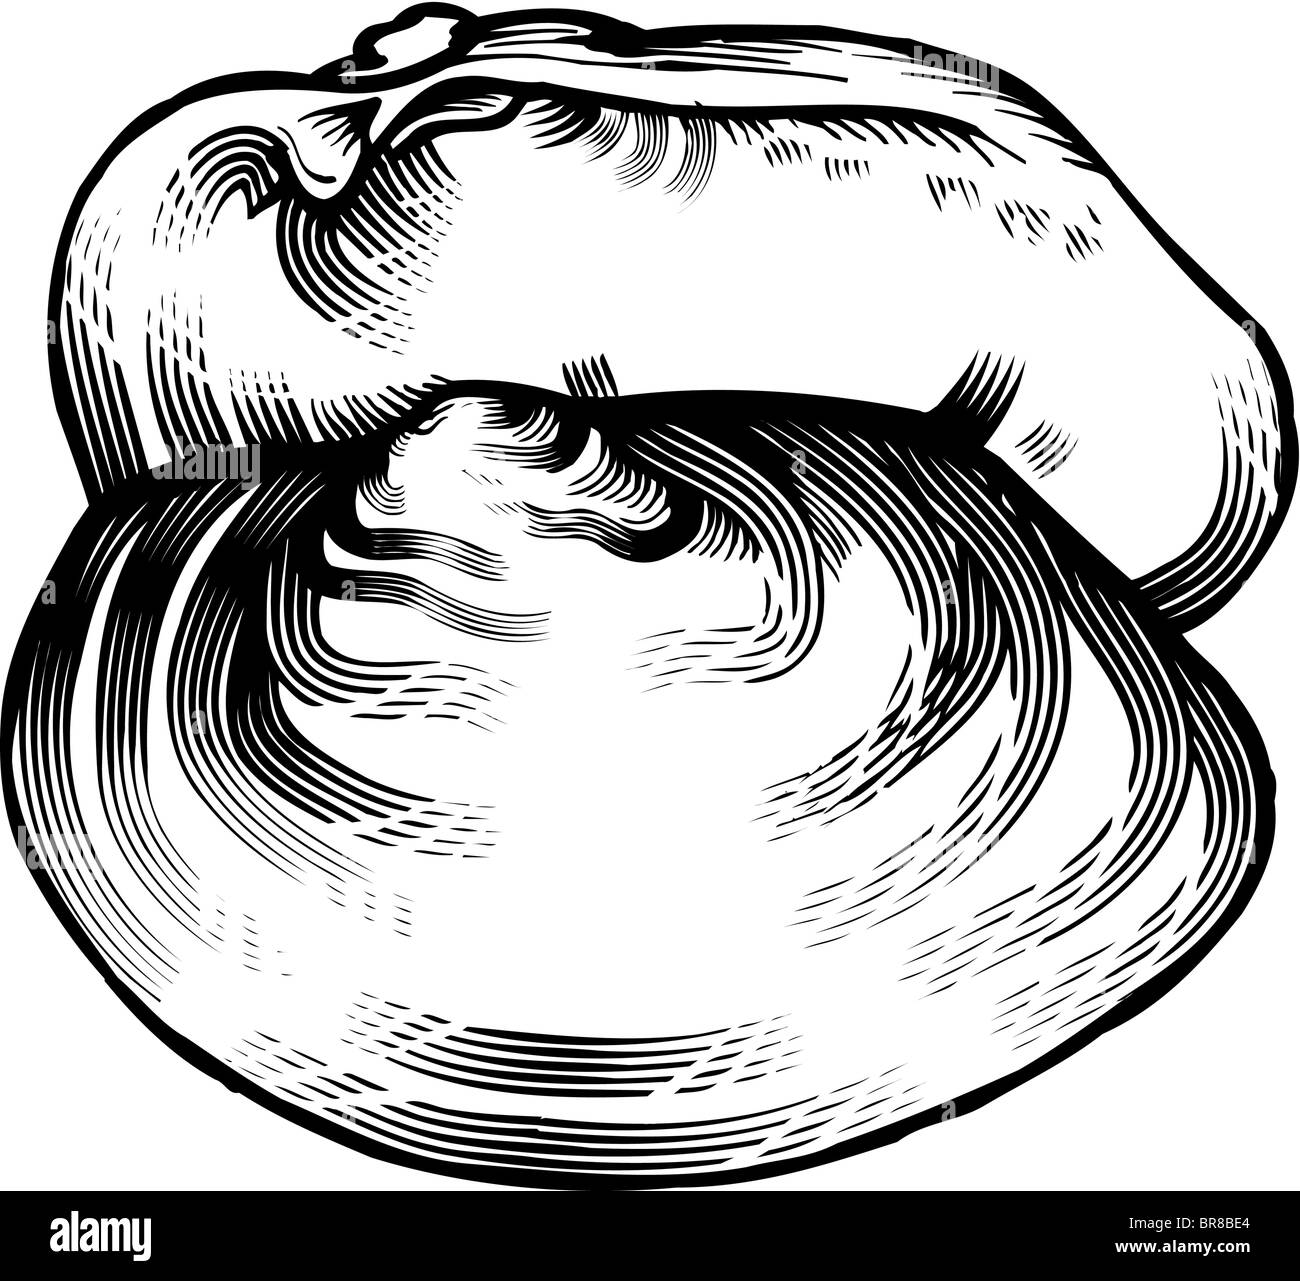 Un dessin en noir et blanc d'un clam Banque D'Images